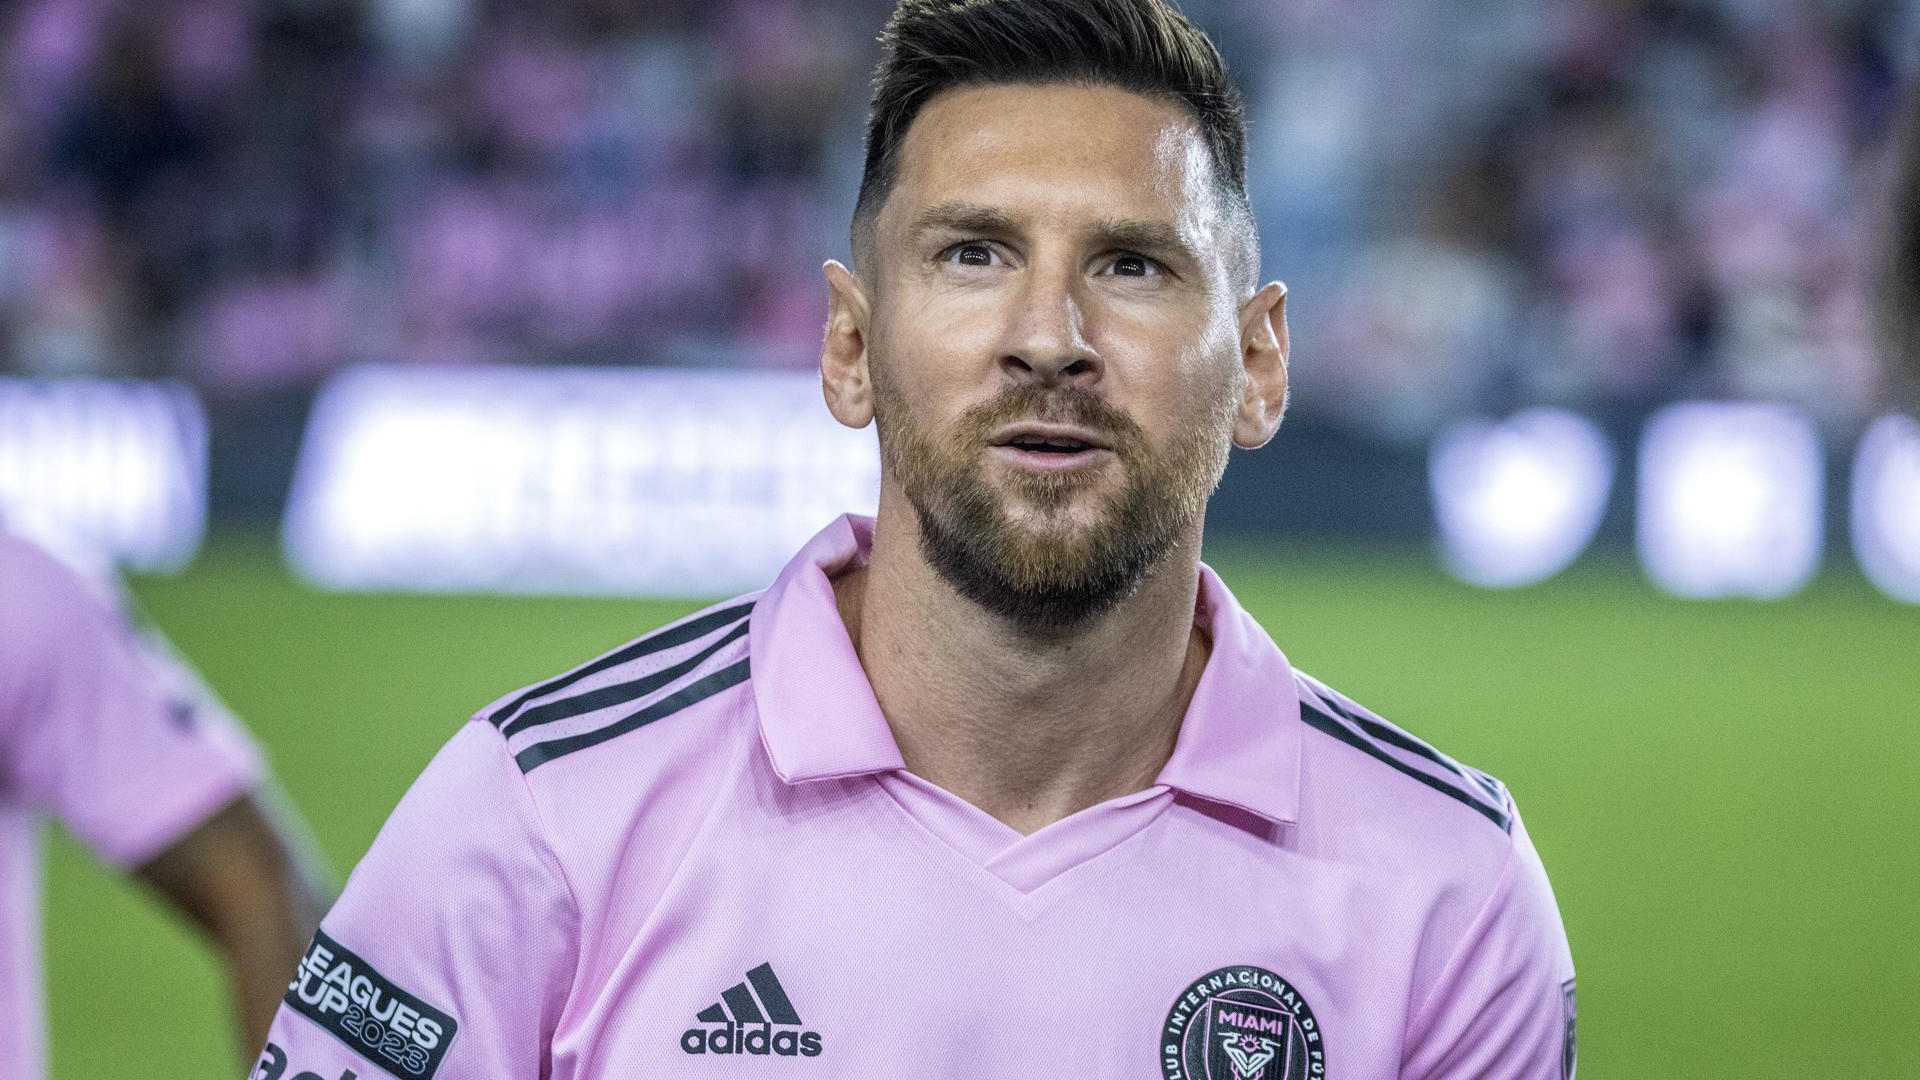 Carga de jogos liga o sinal de alerta no Miami com Messi